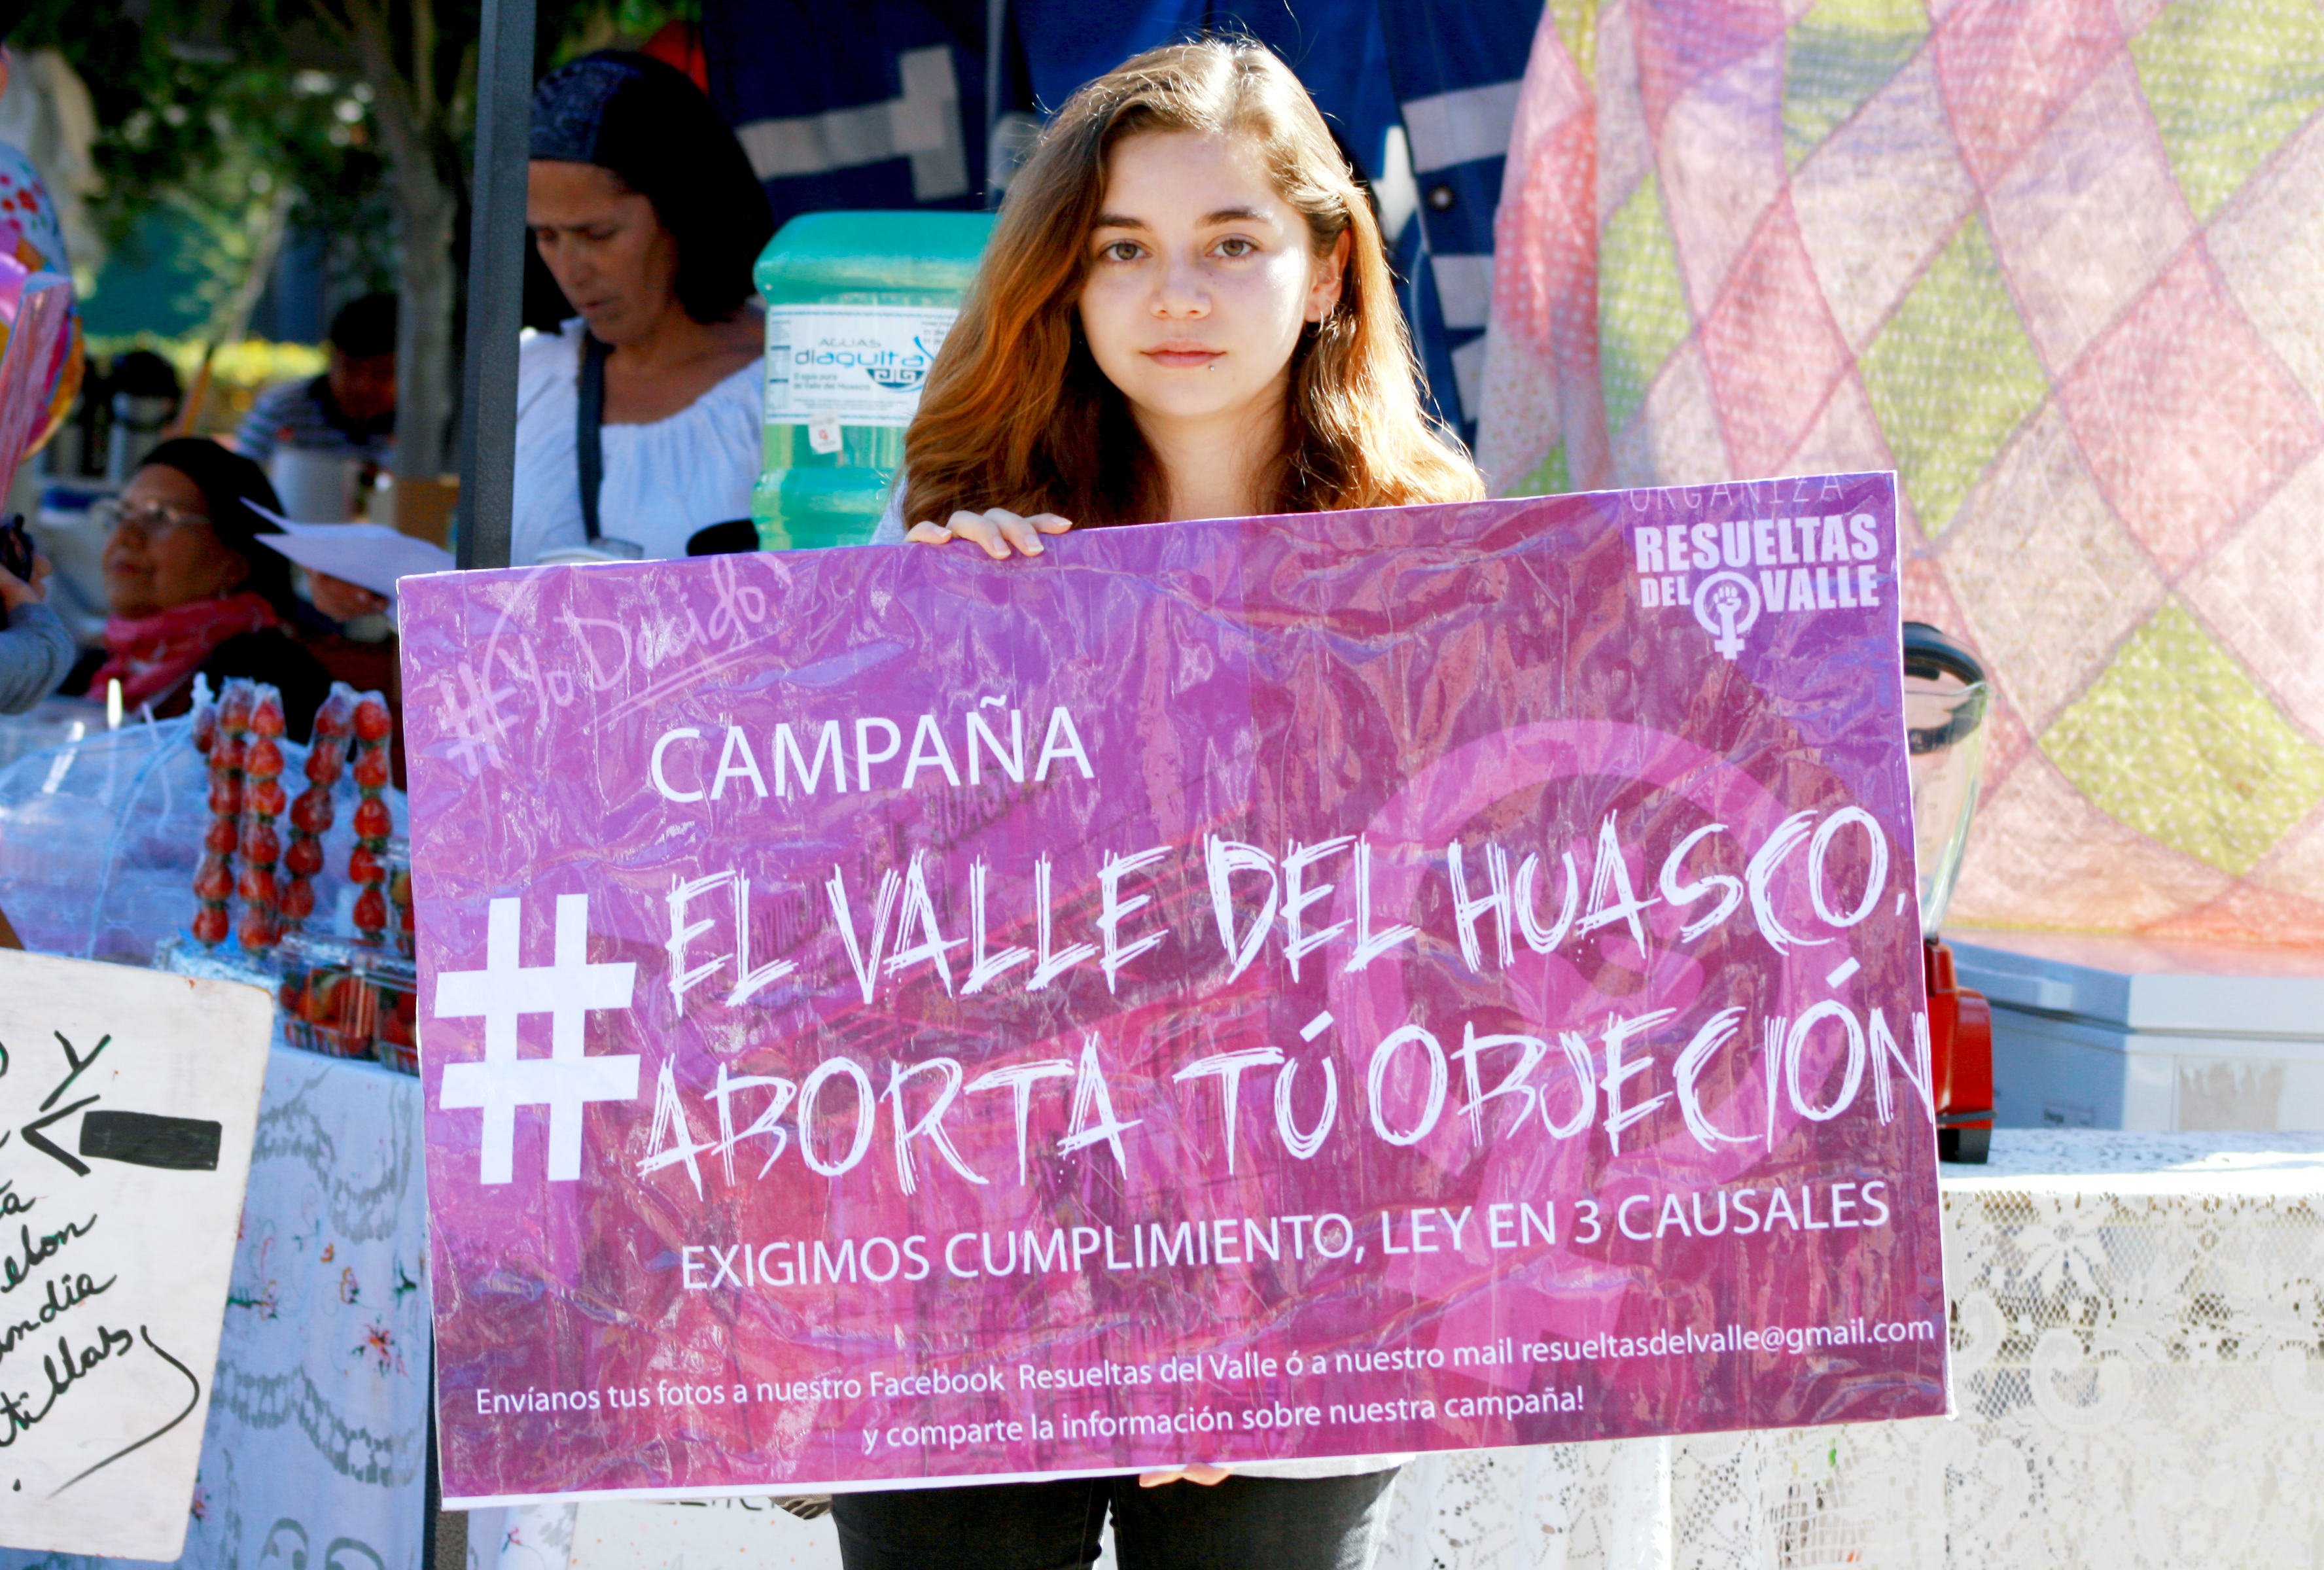 Agrupación "Resueltas del Valle" realiza marcha contra violación y piden que se cumpla ley de aborto en hospital